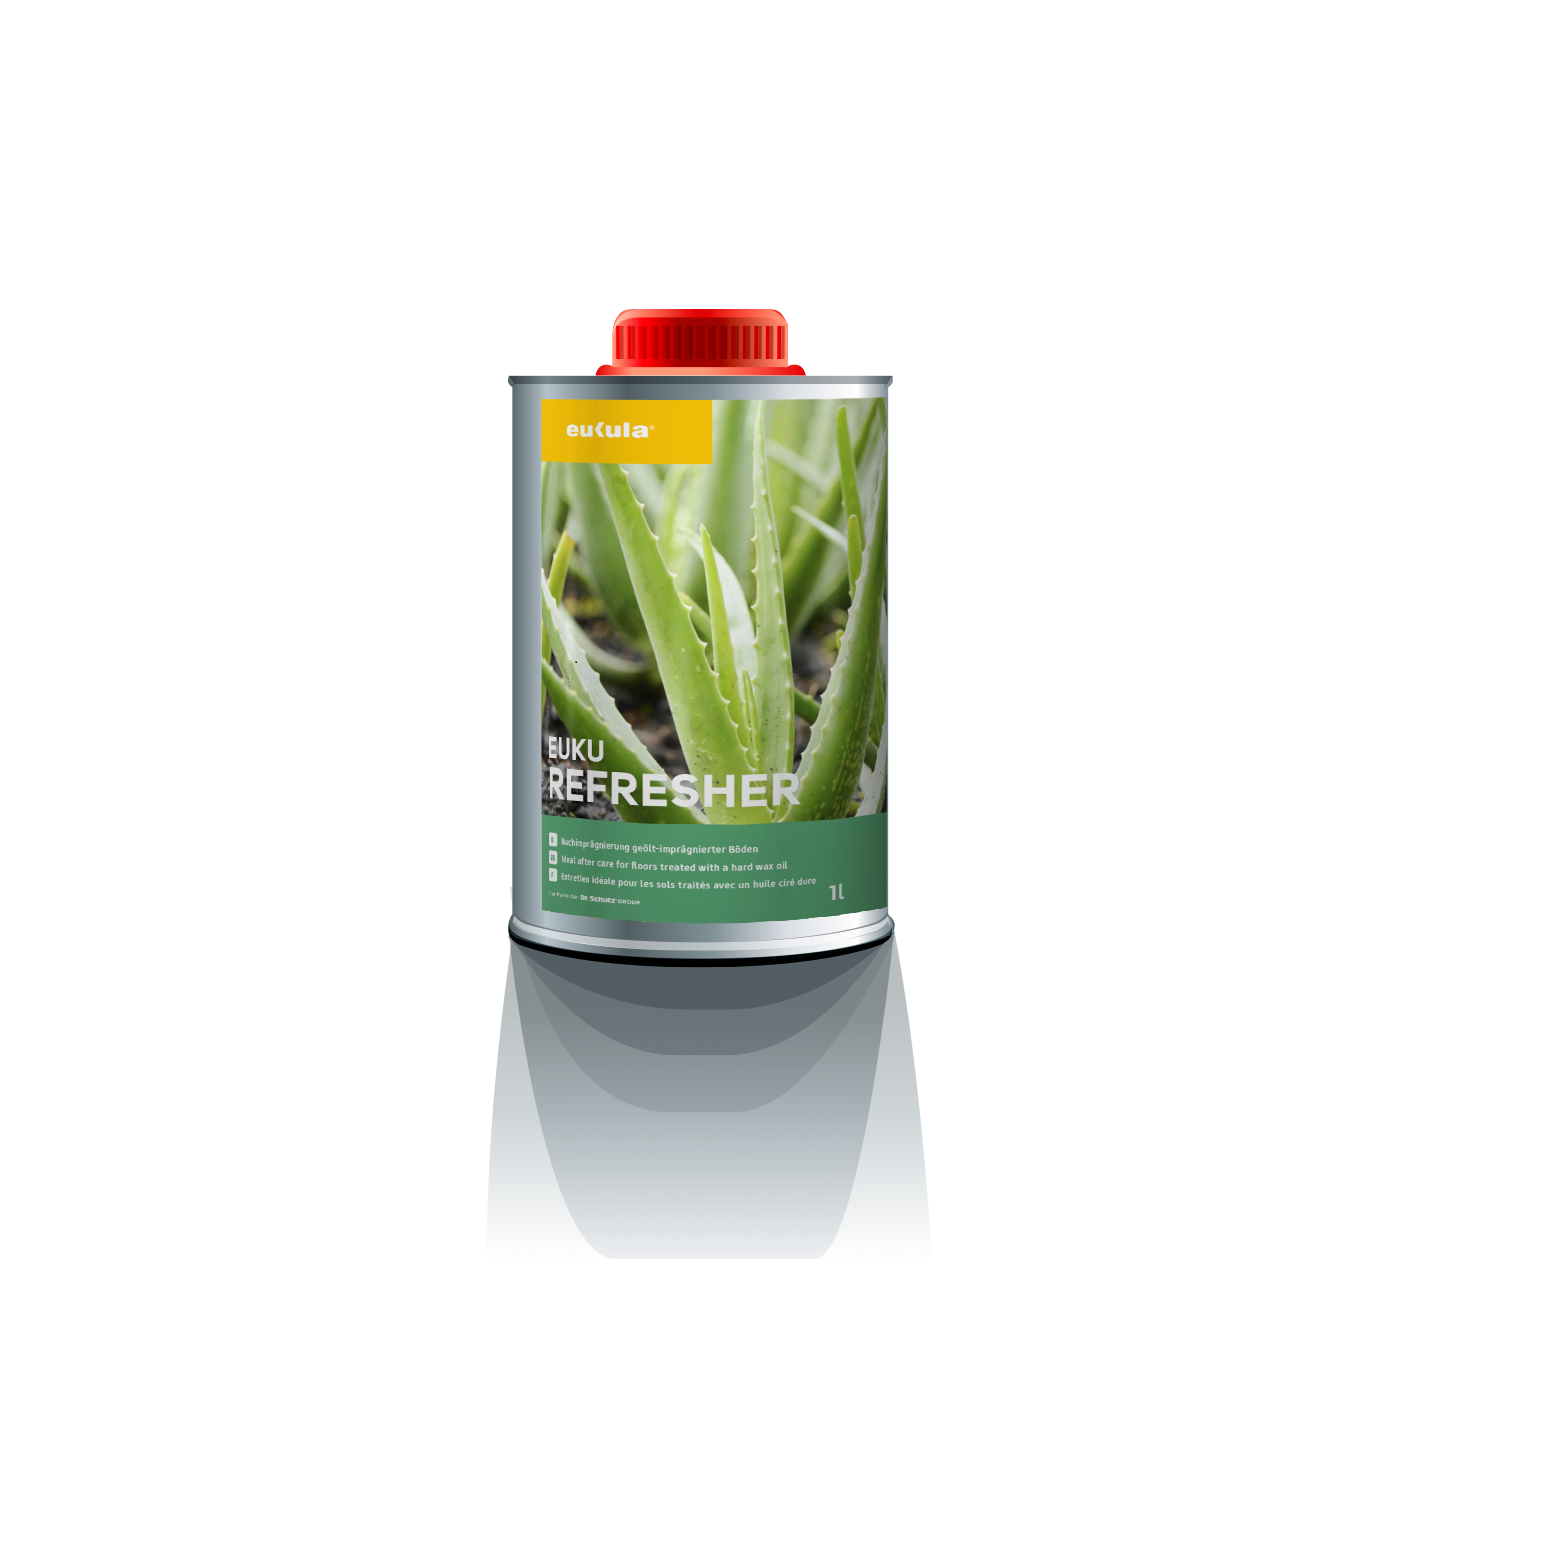 Eukula refresher - ošetřovací voskový olej 1 l